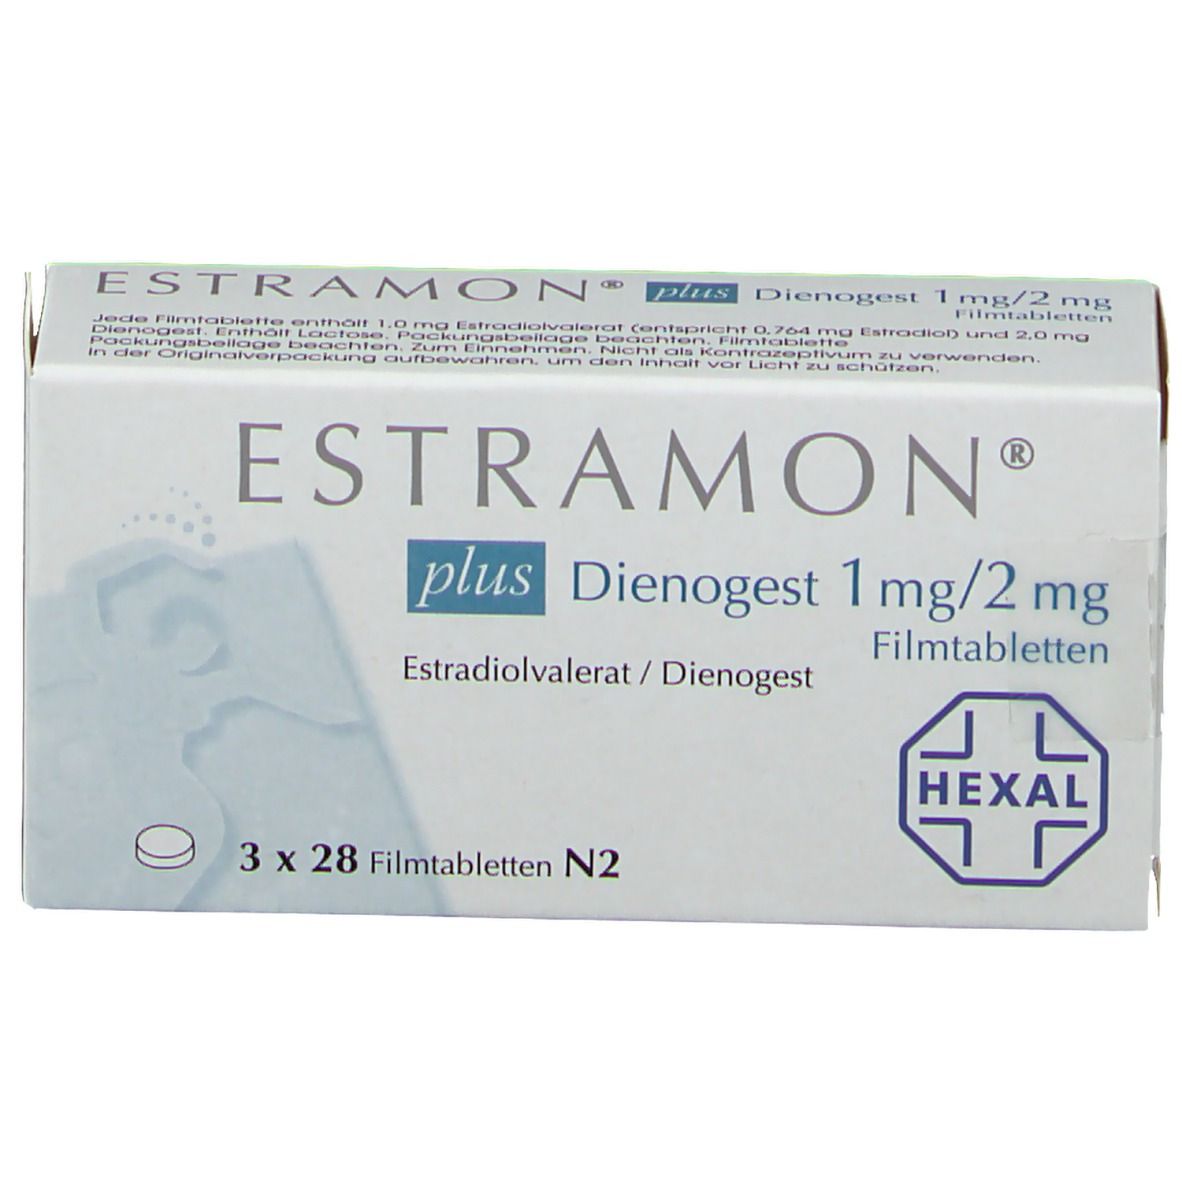 ESTRAMON® plus Dienogest 1 mg/ 2 mg